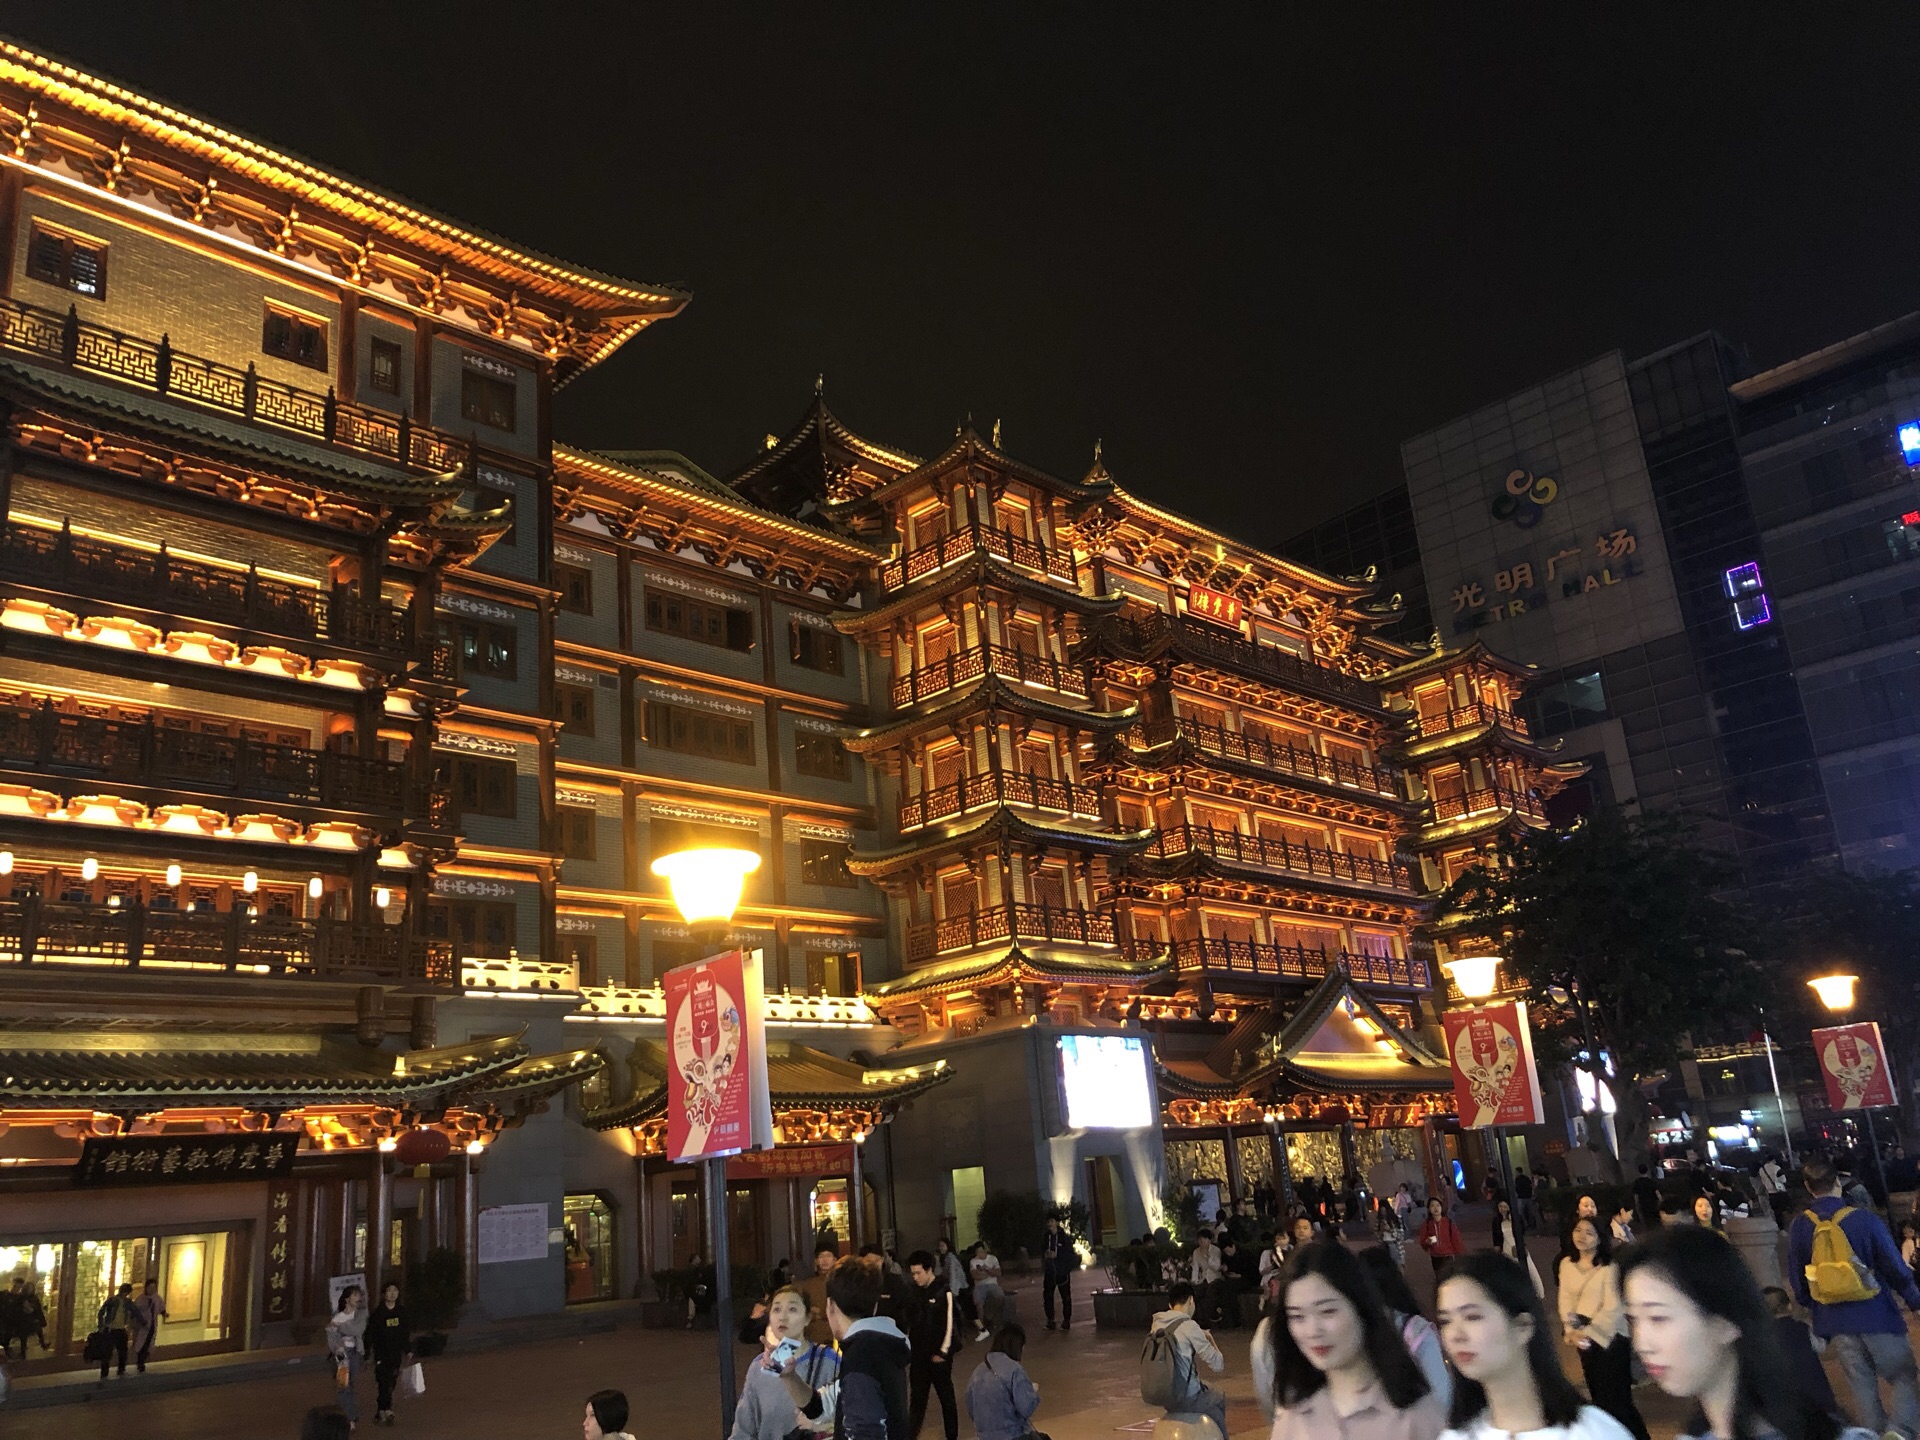 【携程攻略】广州北京路步行街景点,广州最出名的步行街之一,古代这里就是广州市中心.步行街不长,但商铺…